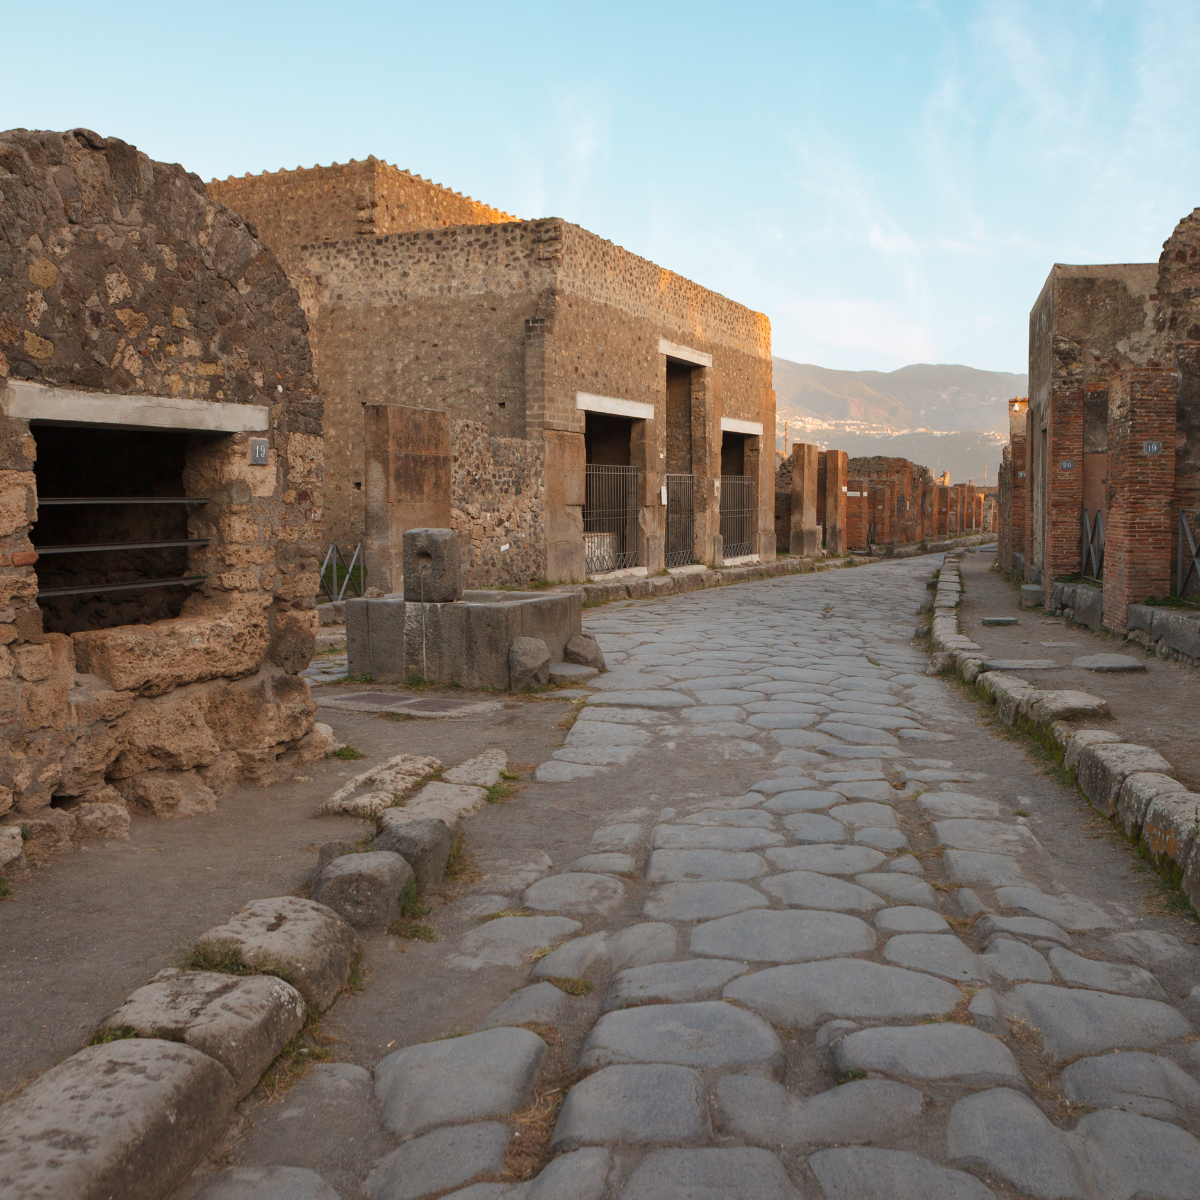 Pompei Experience